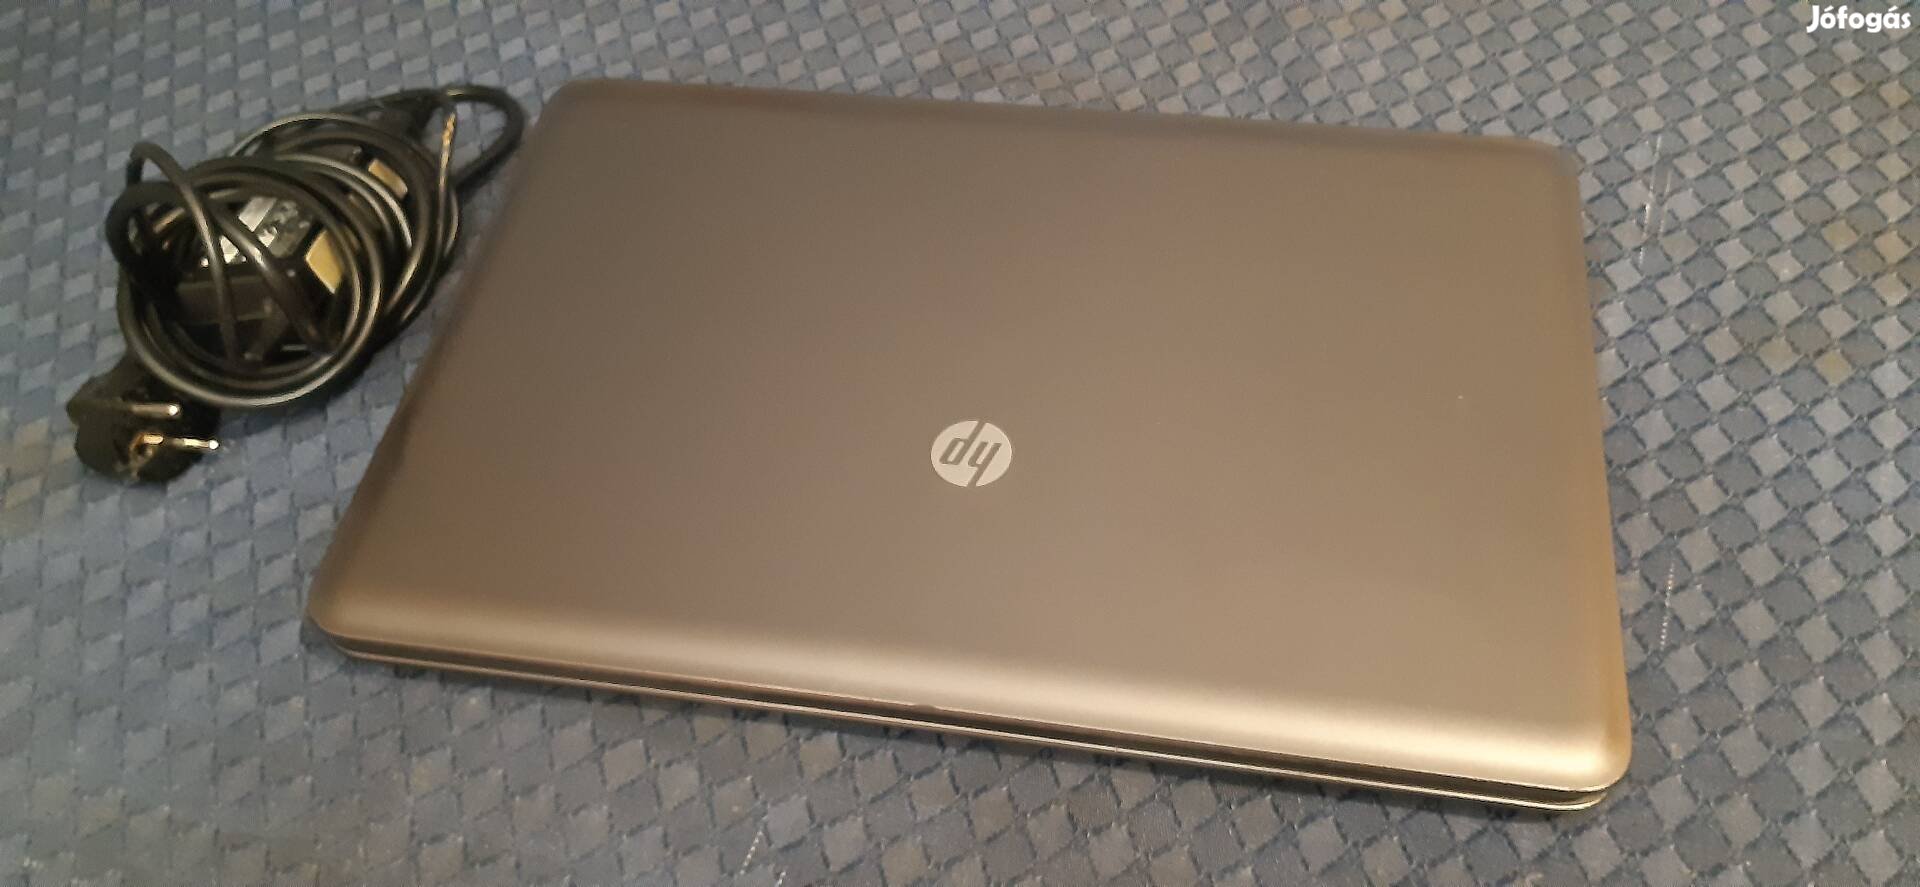 HP 650  pavilion laptop